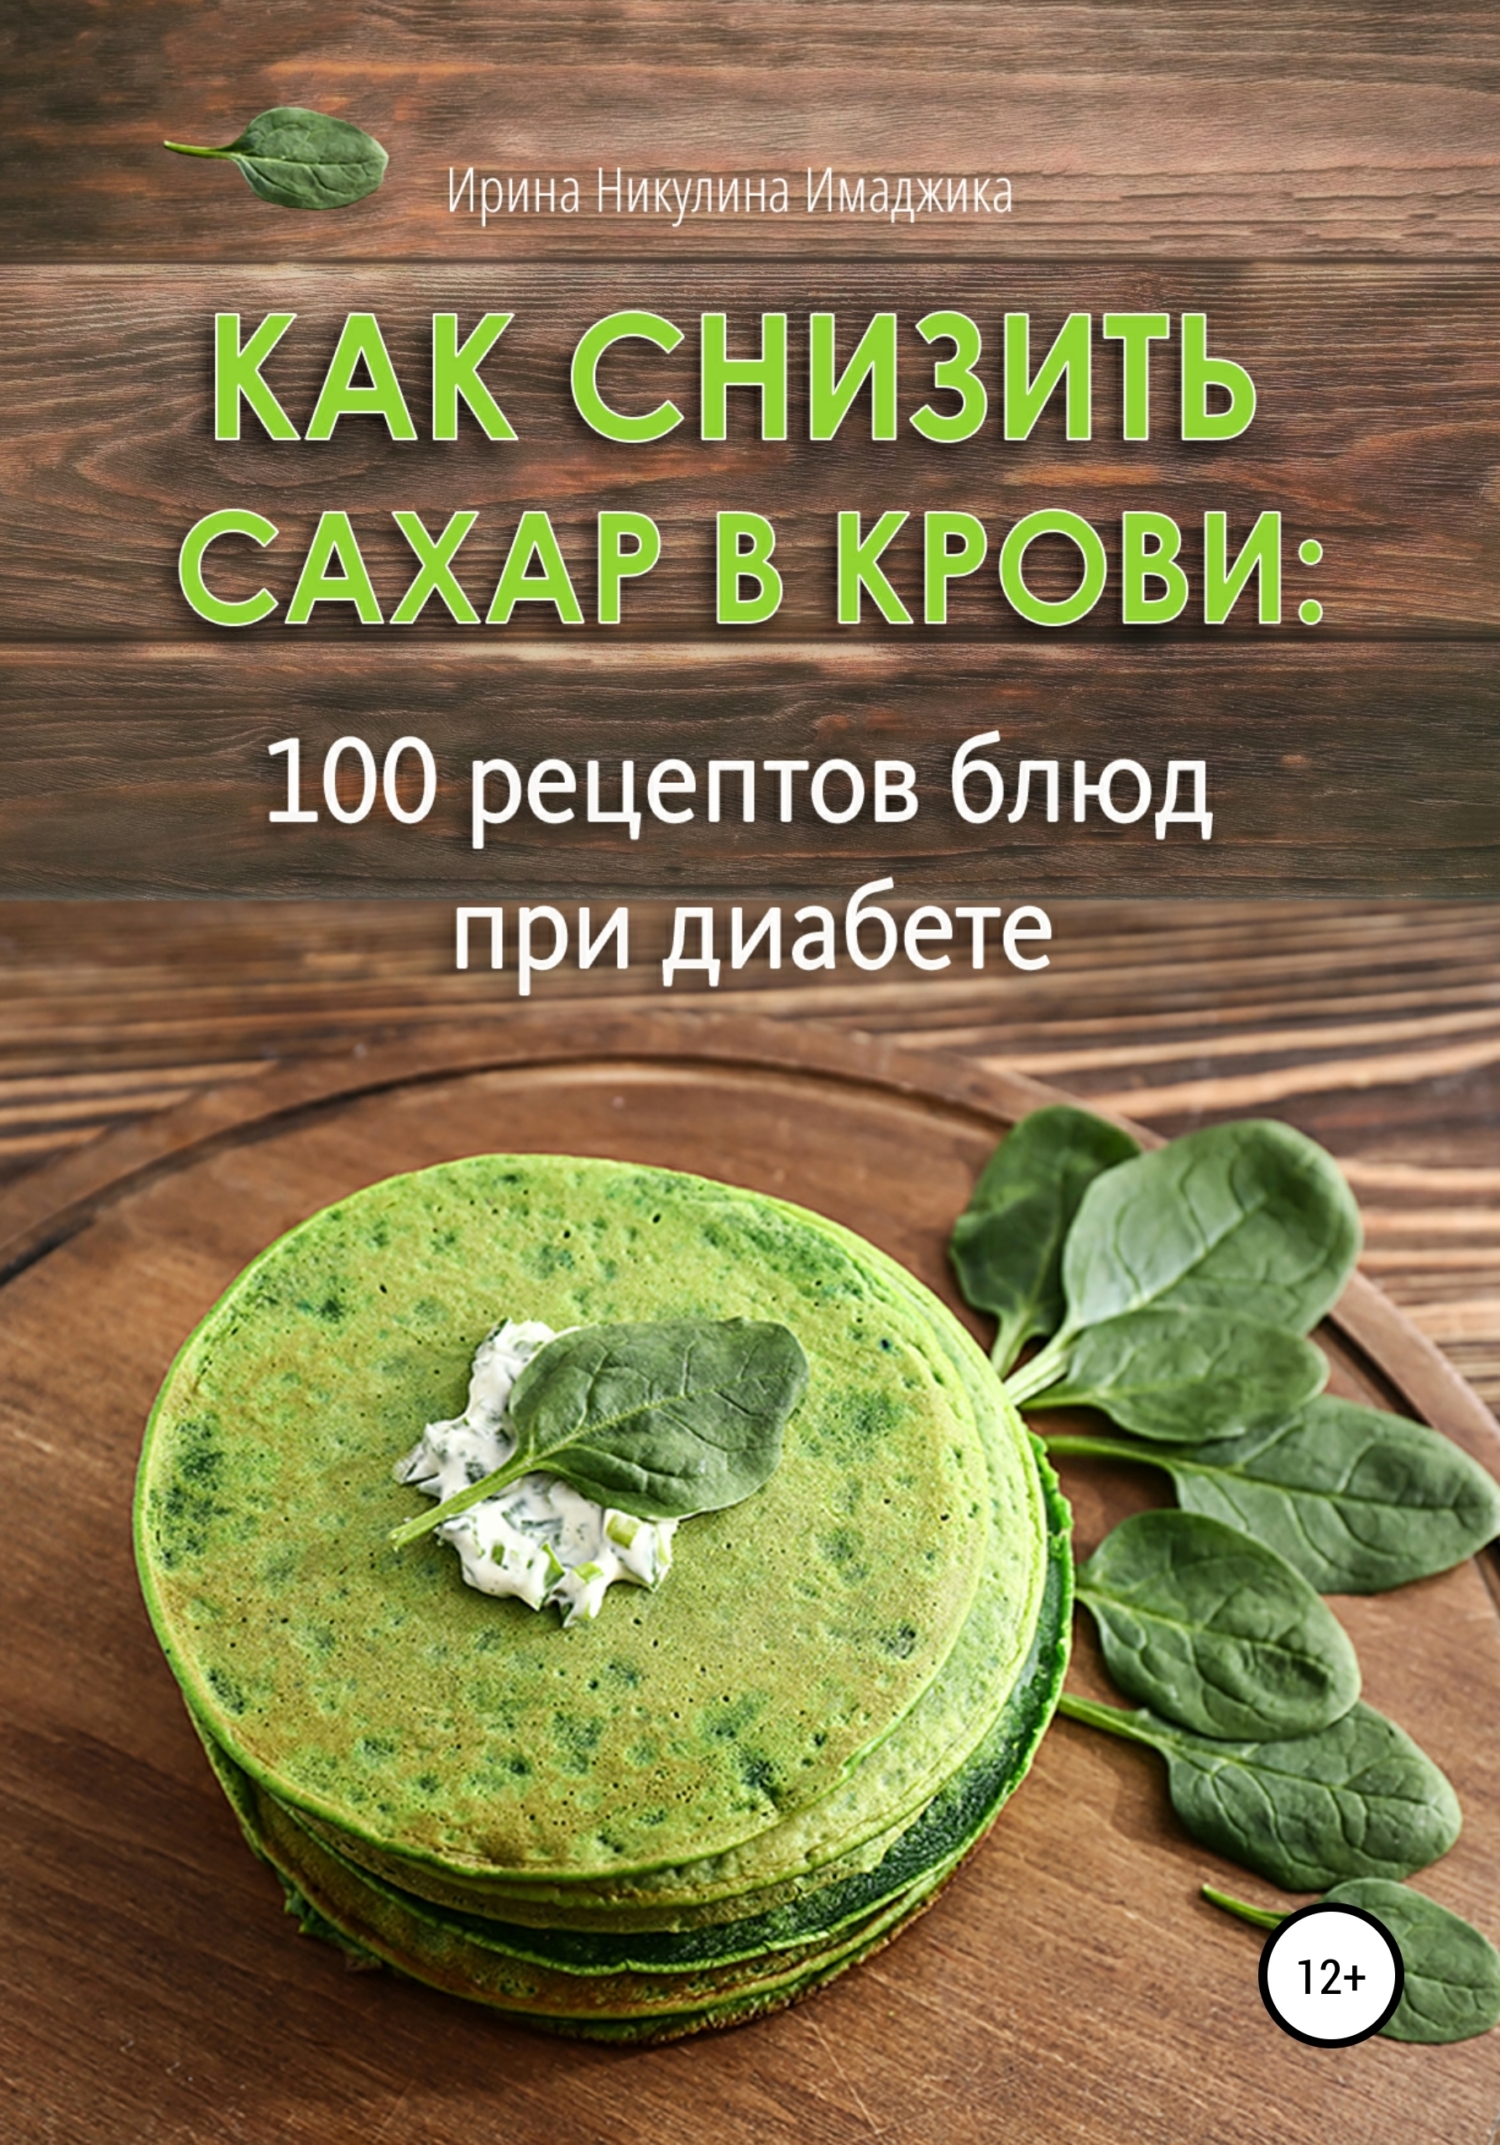 Рубрика: Низкоуглеводные рецепты, Кремлевская диета